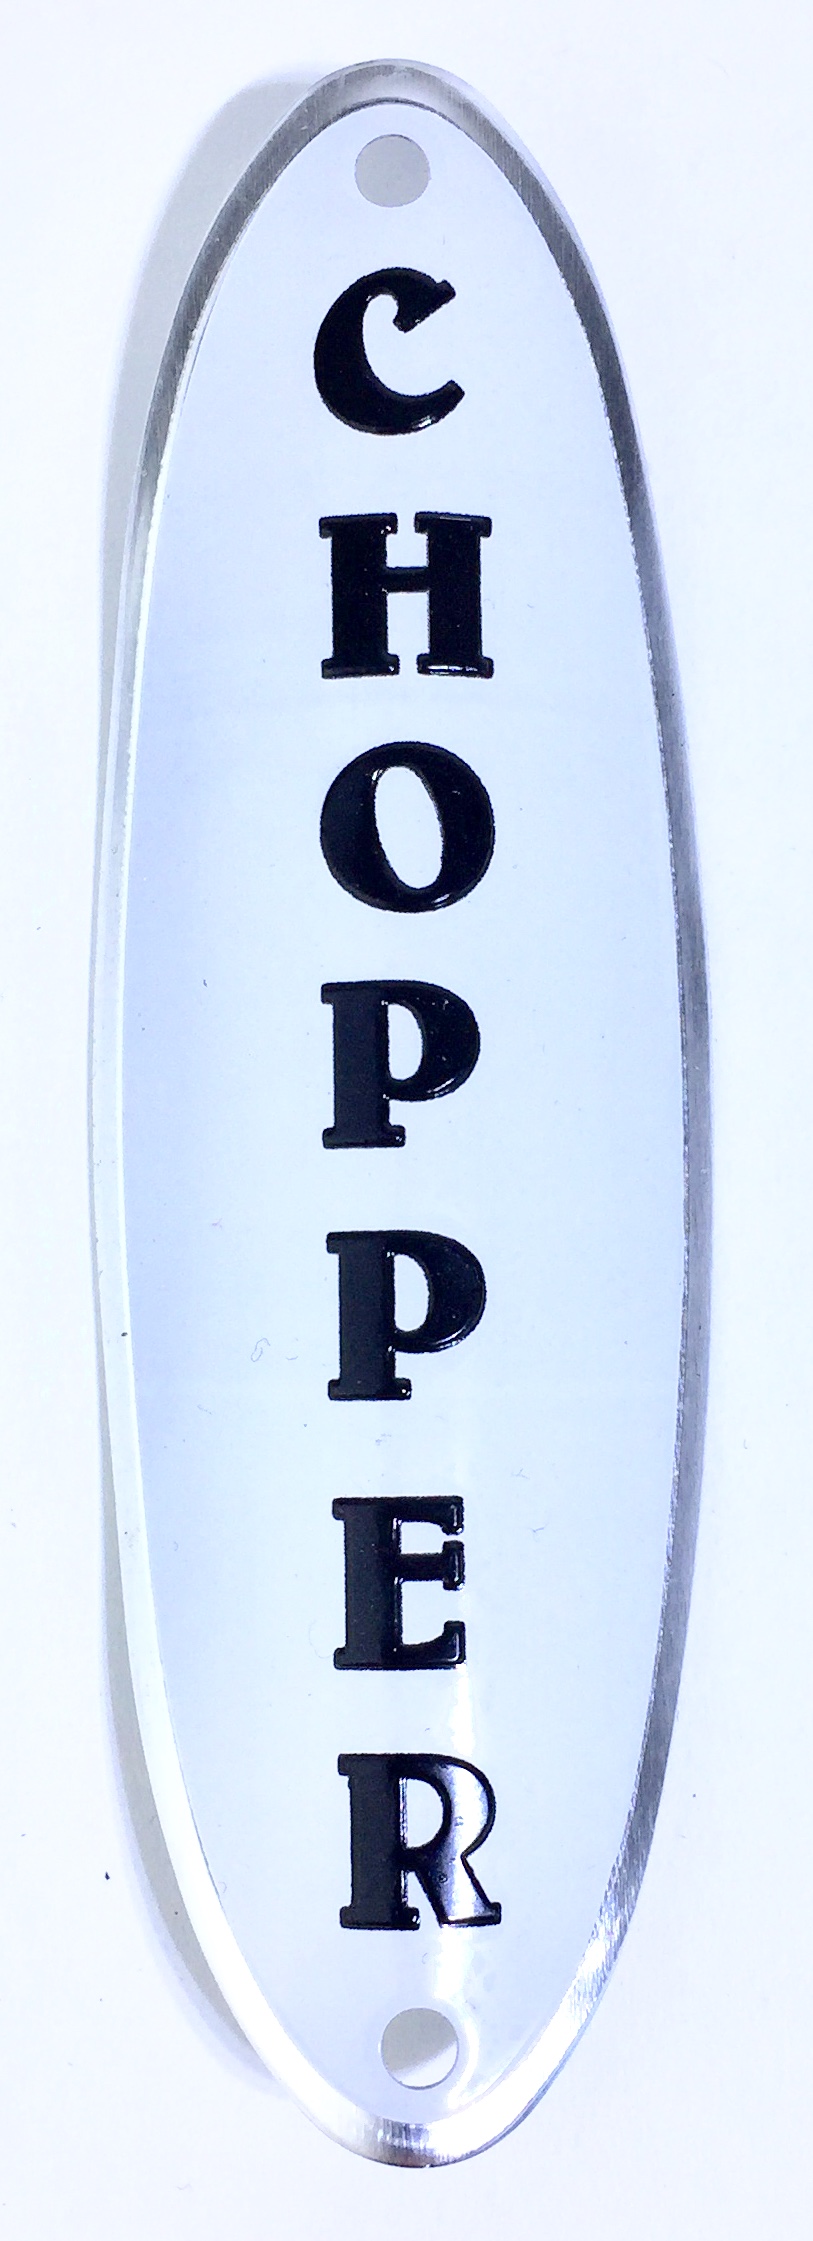 Placa de unidad de dirección Chopper ovalada en blanco